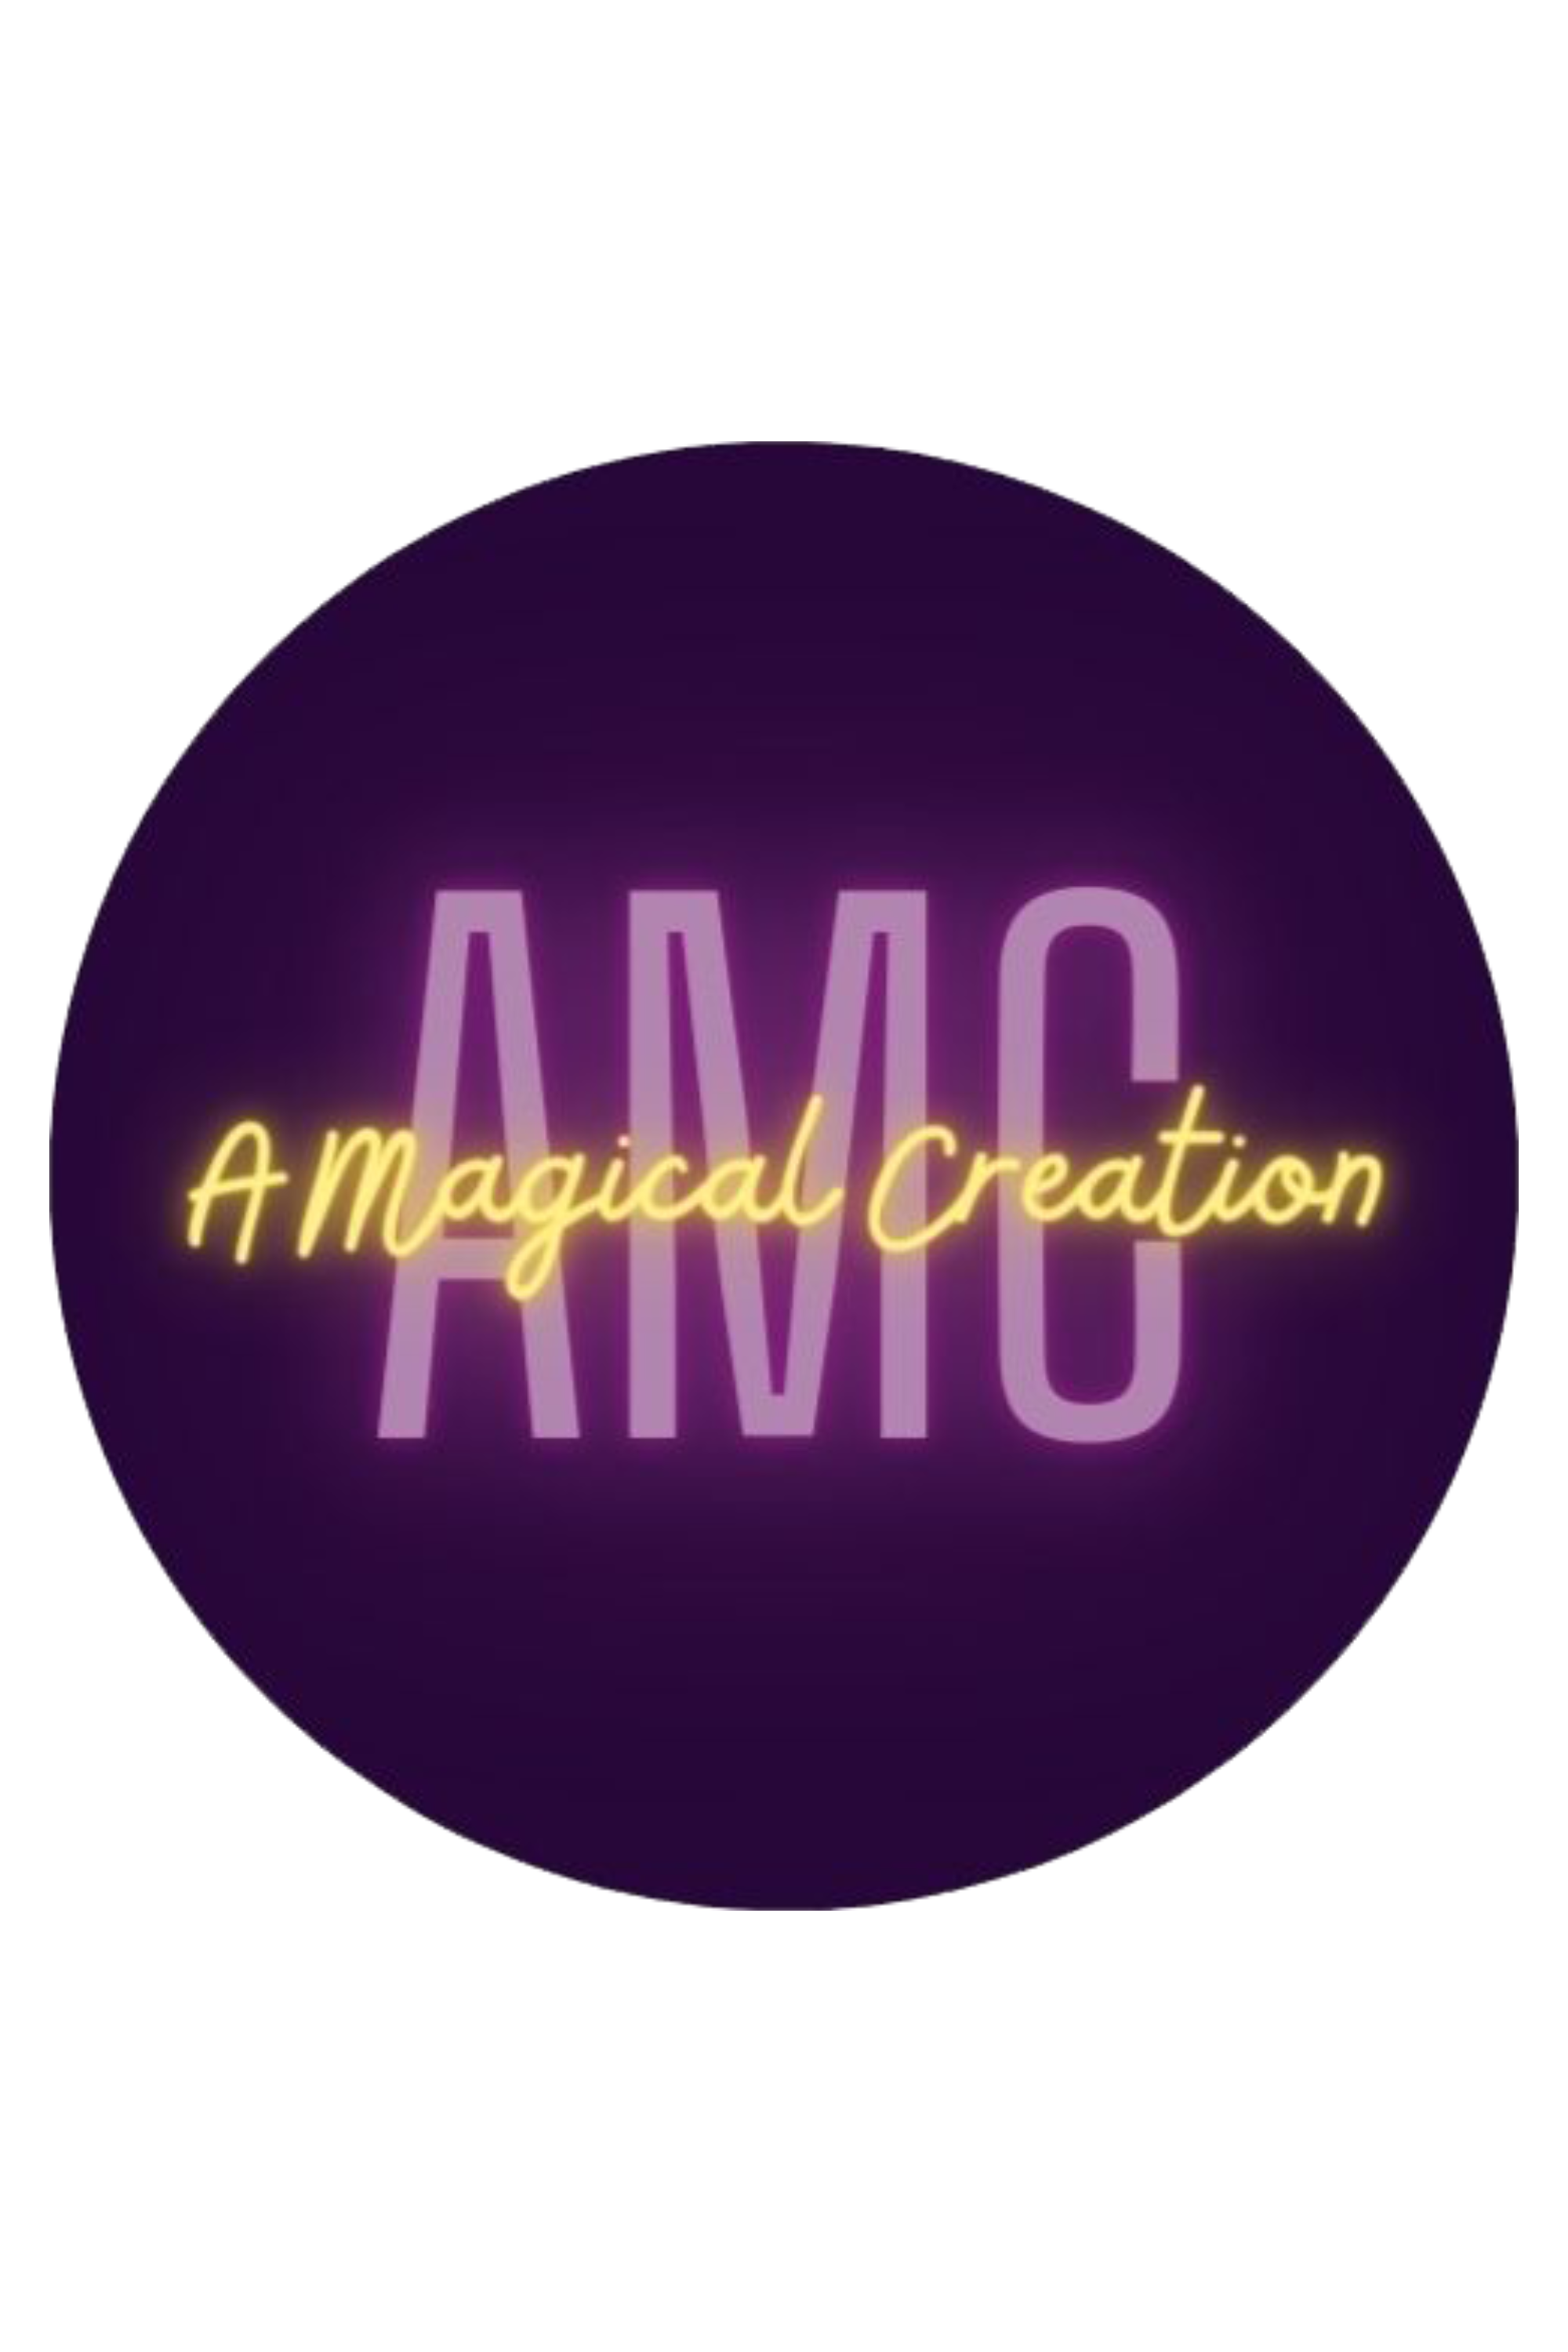 A Magical Creation